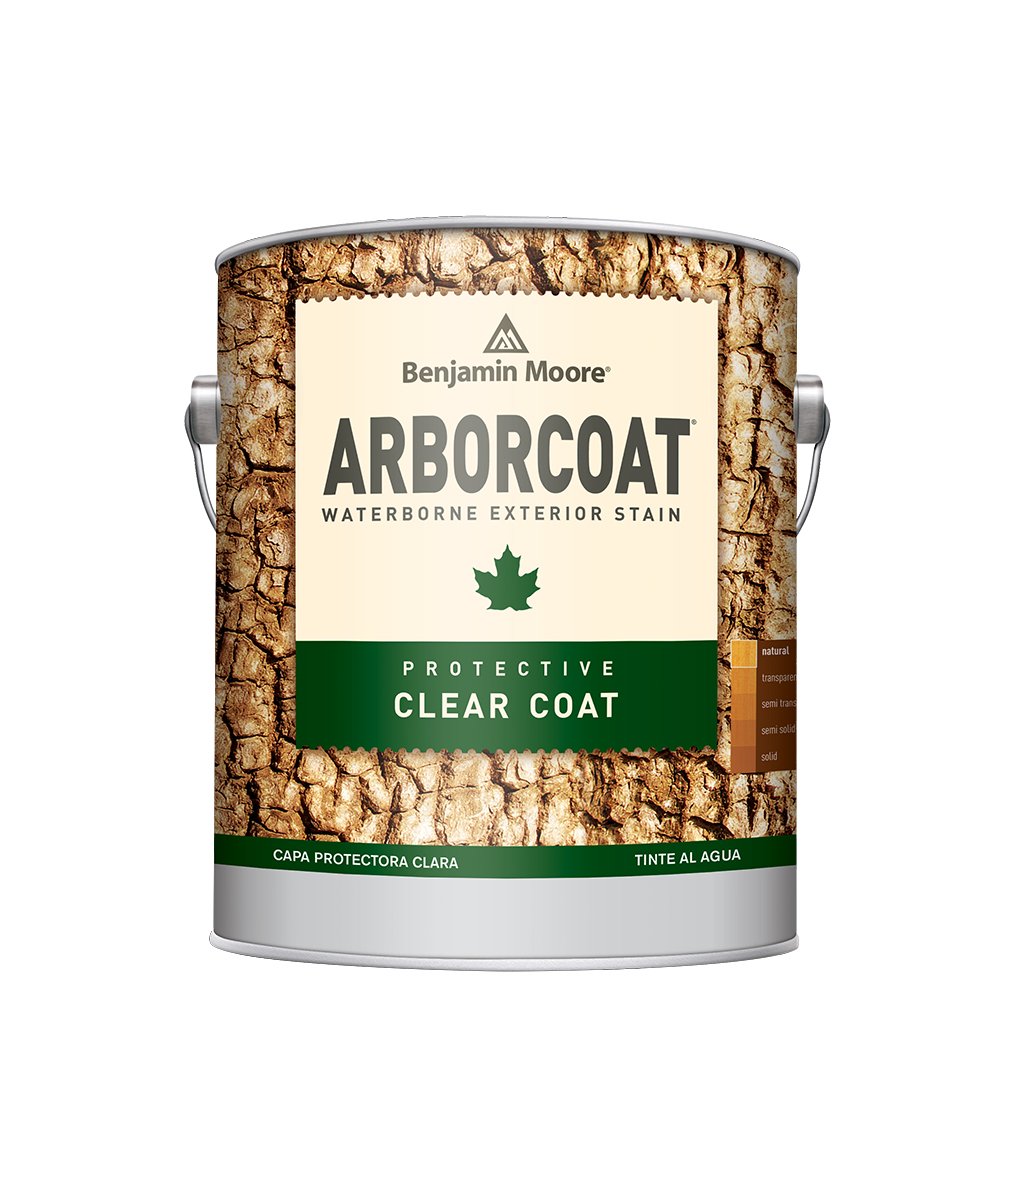 https://catalinapaintstore.com/cdn/shop/products/Arborcoat-clear-coat_1010x.jpg?v=1598879901